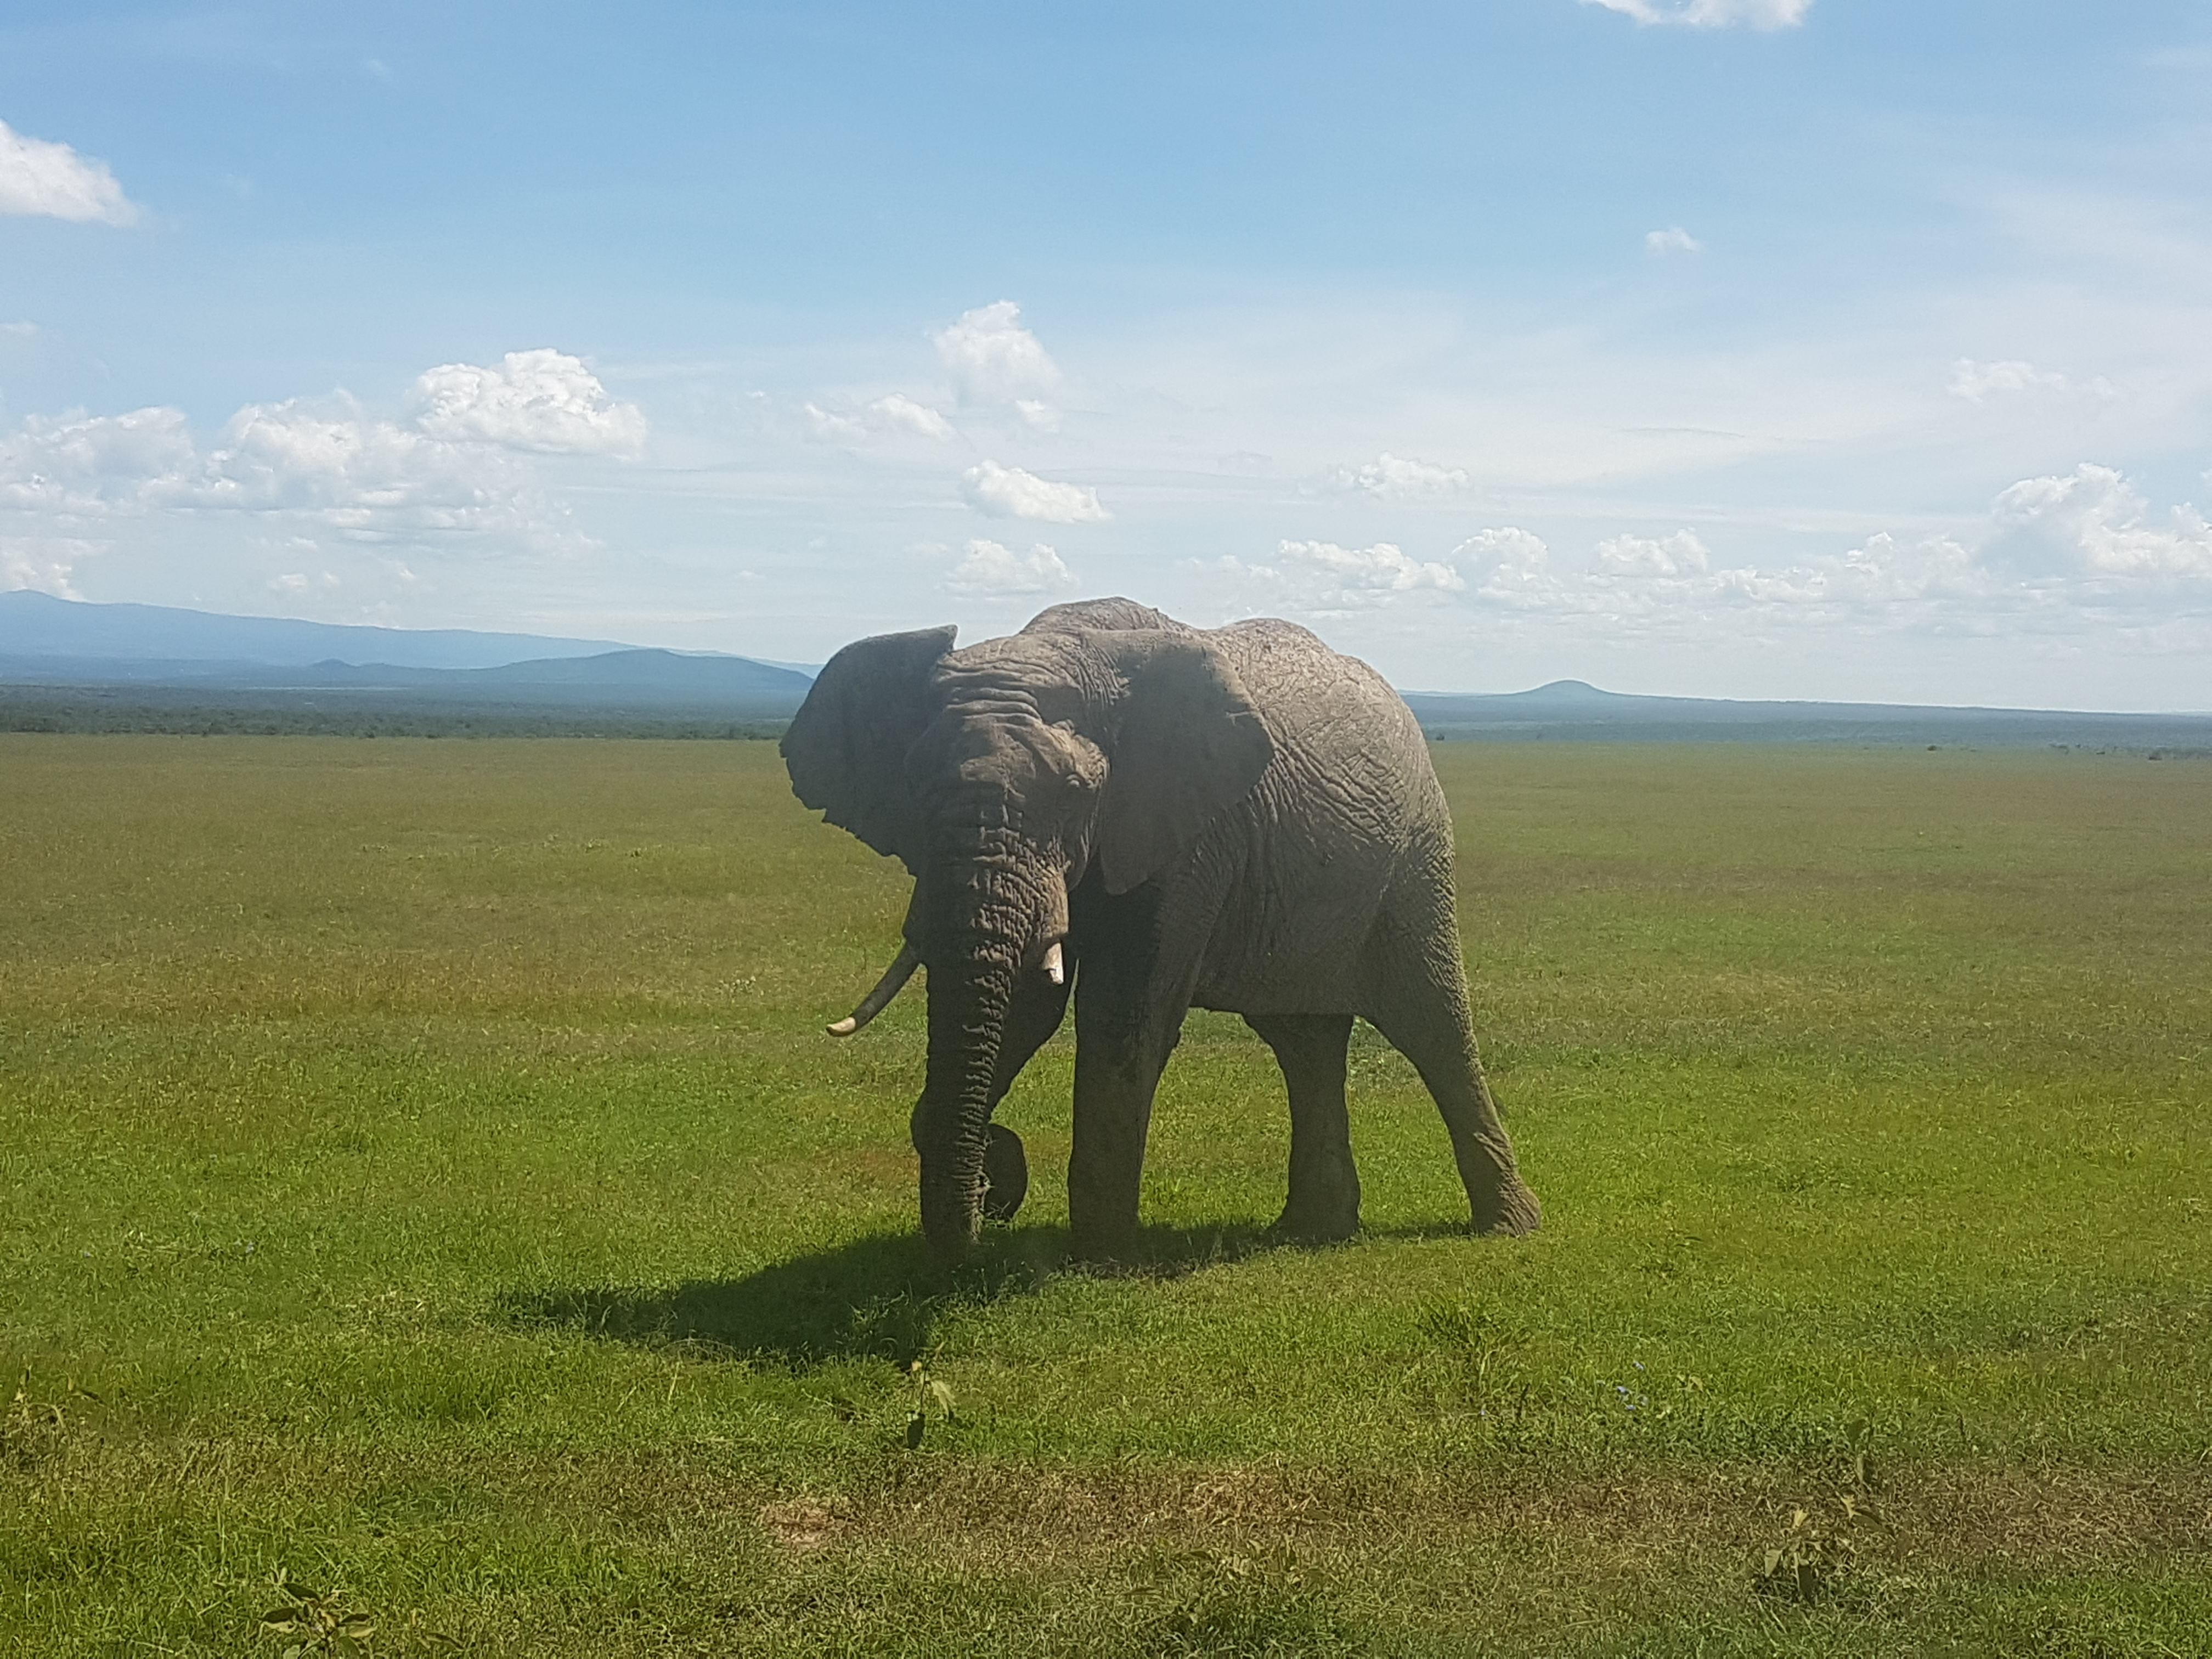 Kenya Ol pejeta Safari